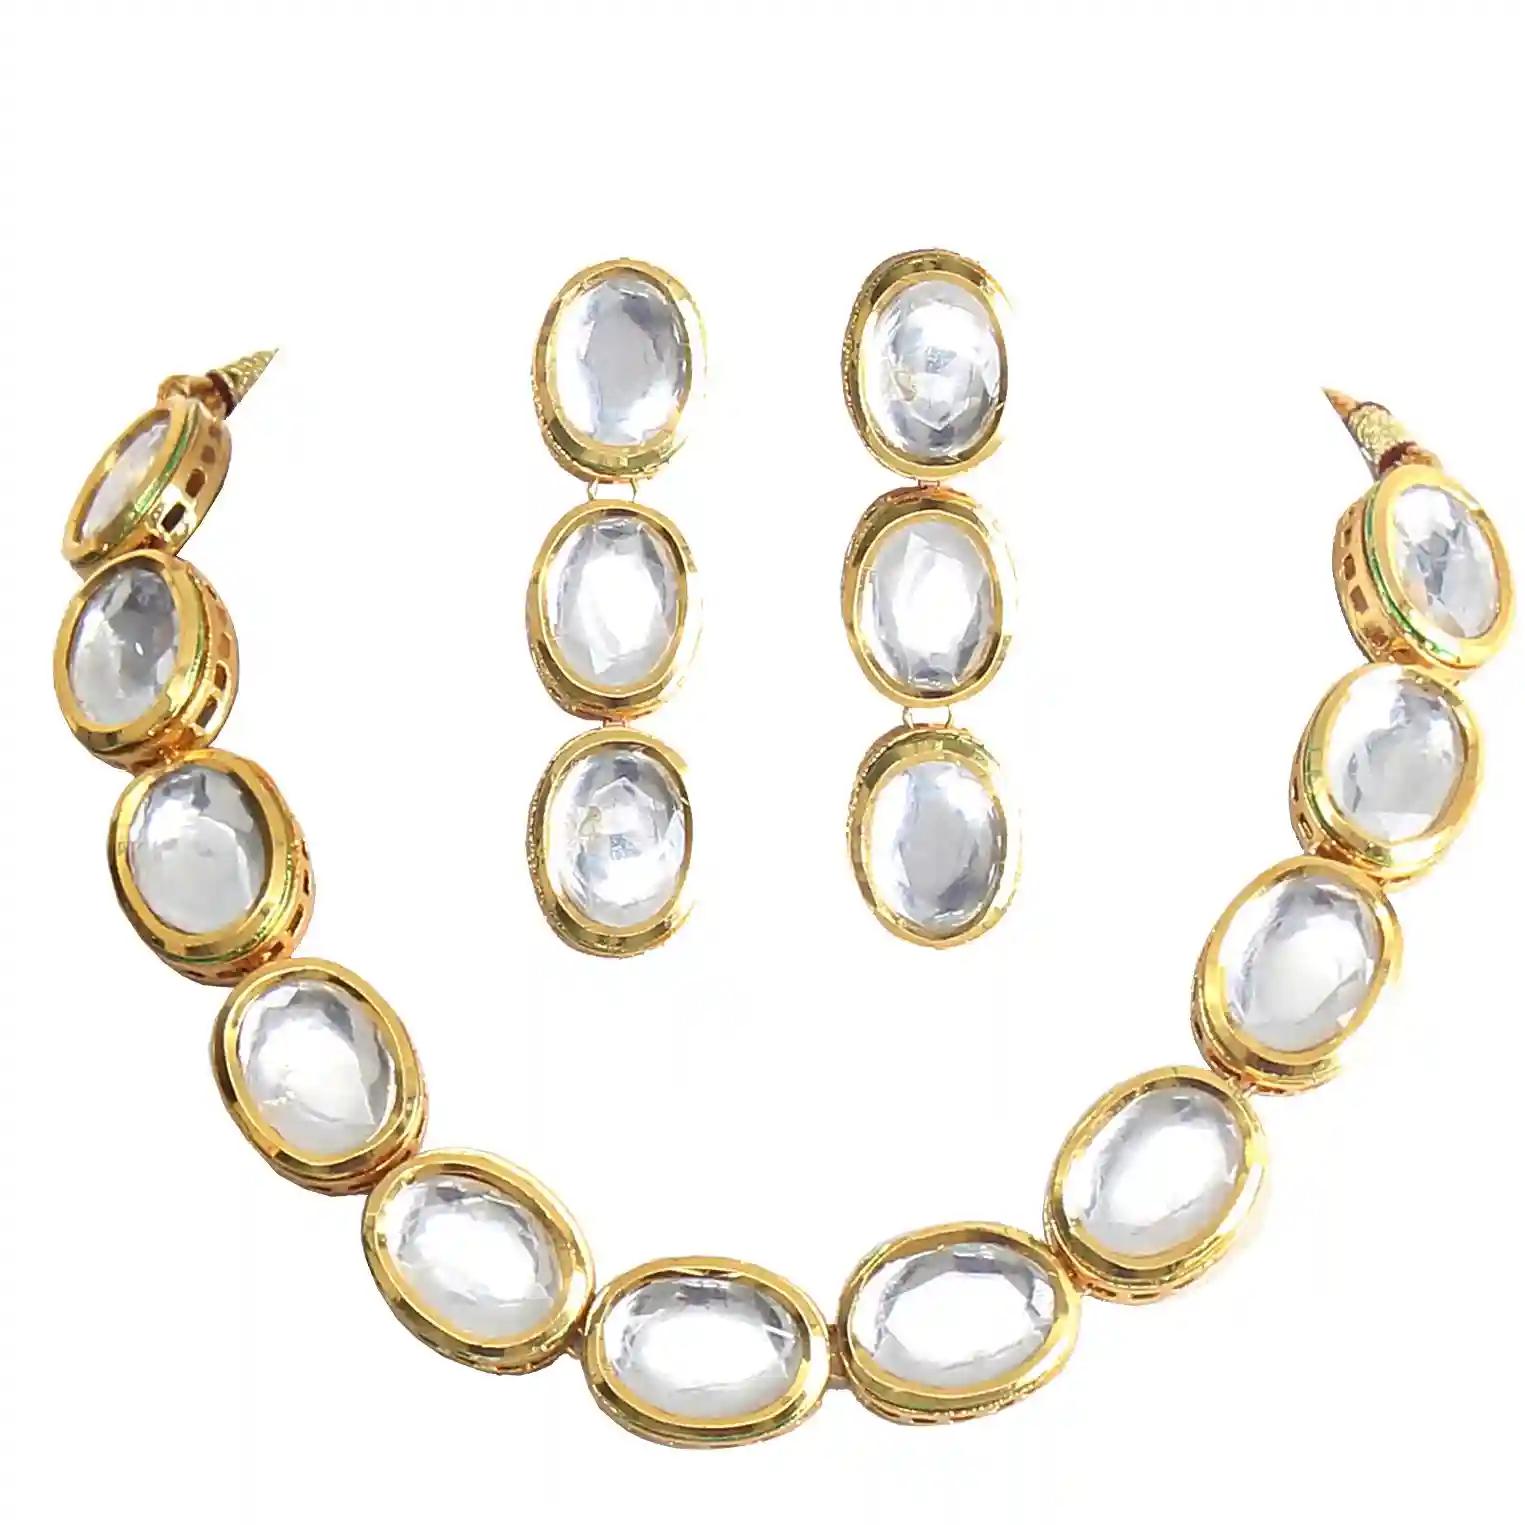 Gold Plated(18k) Round Kundan Stone Necklace Set - White